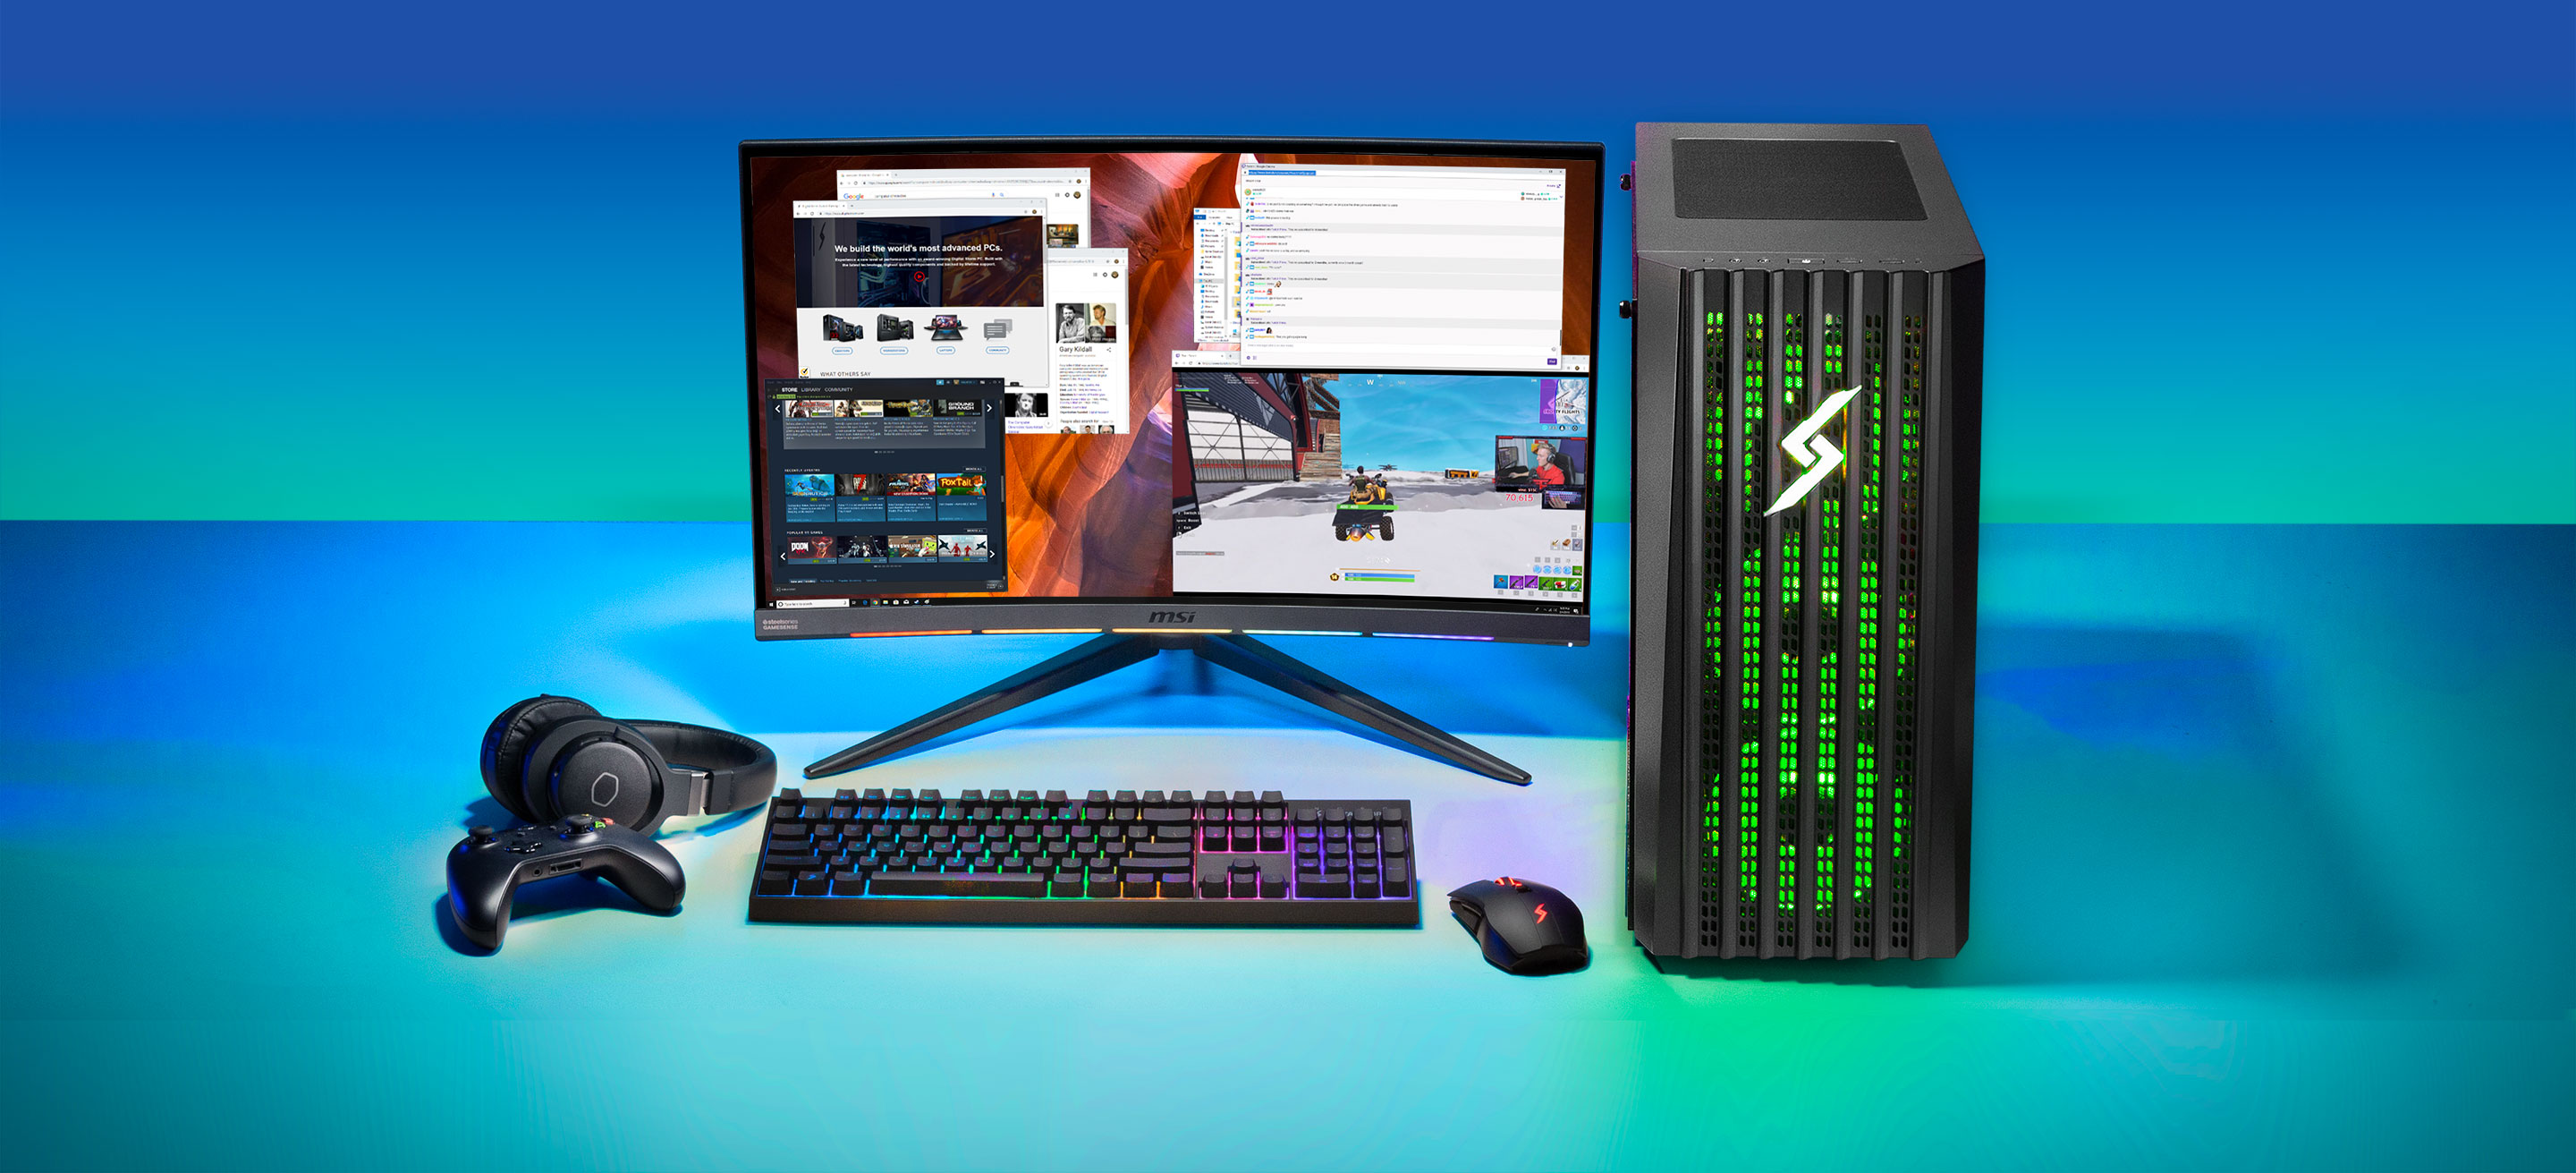 Full gamer setup with Lynx desktop